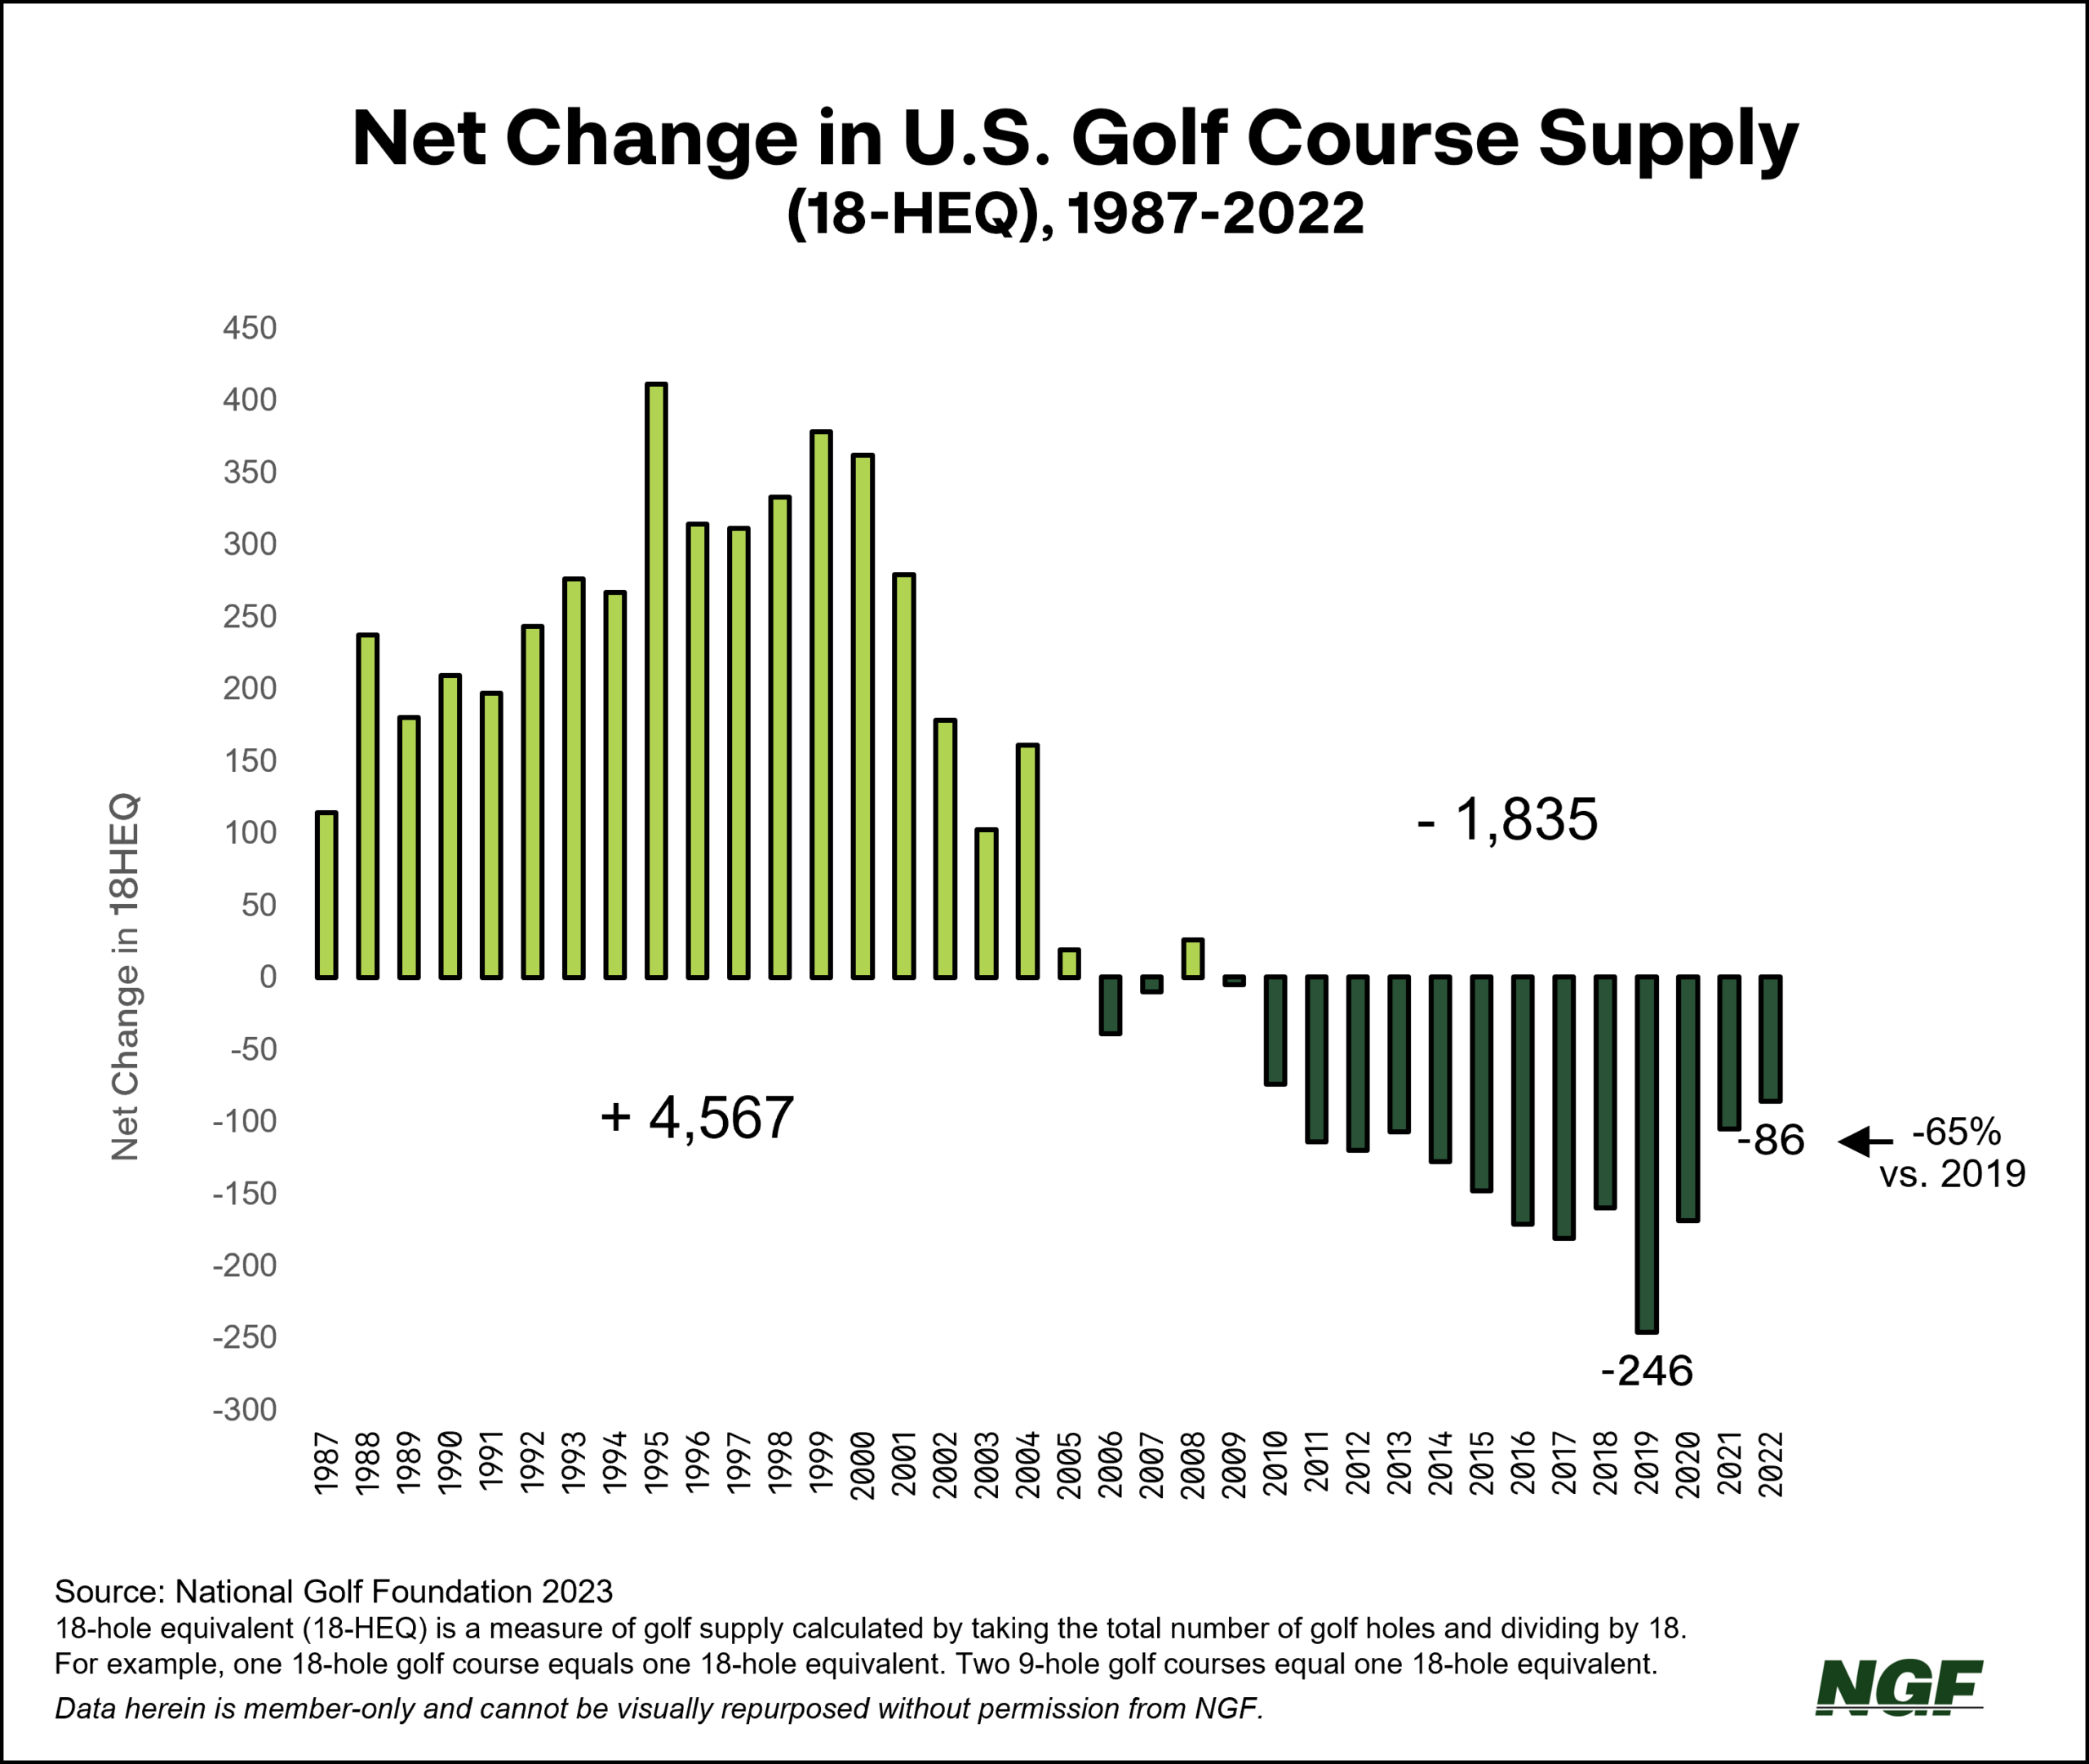 Net Change in U.S. Supply by Year